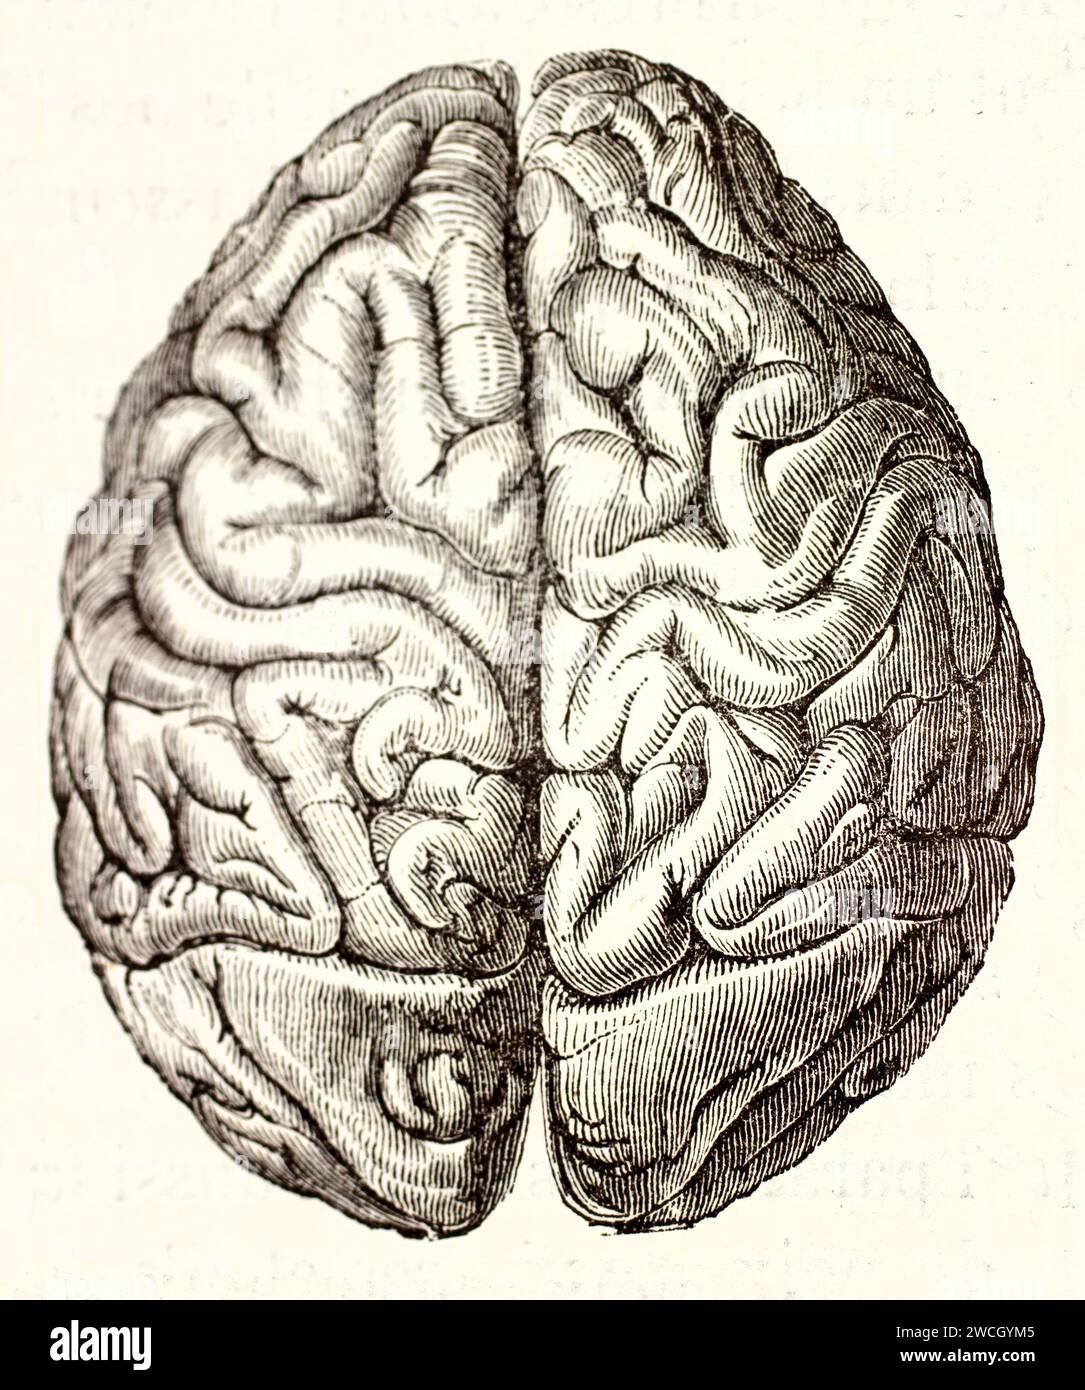 Alte gravierte Illustration des menschlichen Gehirns von oben. Von unbekanntem Autor, veröffentlicht auf Brehm, Les Mammifers, Baillière et fils, Paris, 1878 Stockfoto